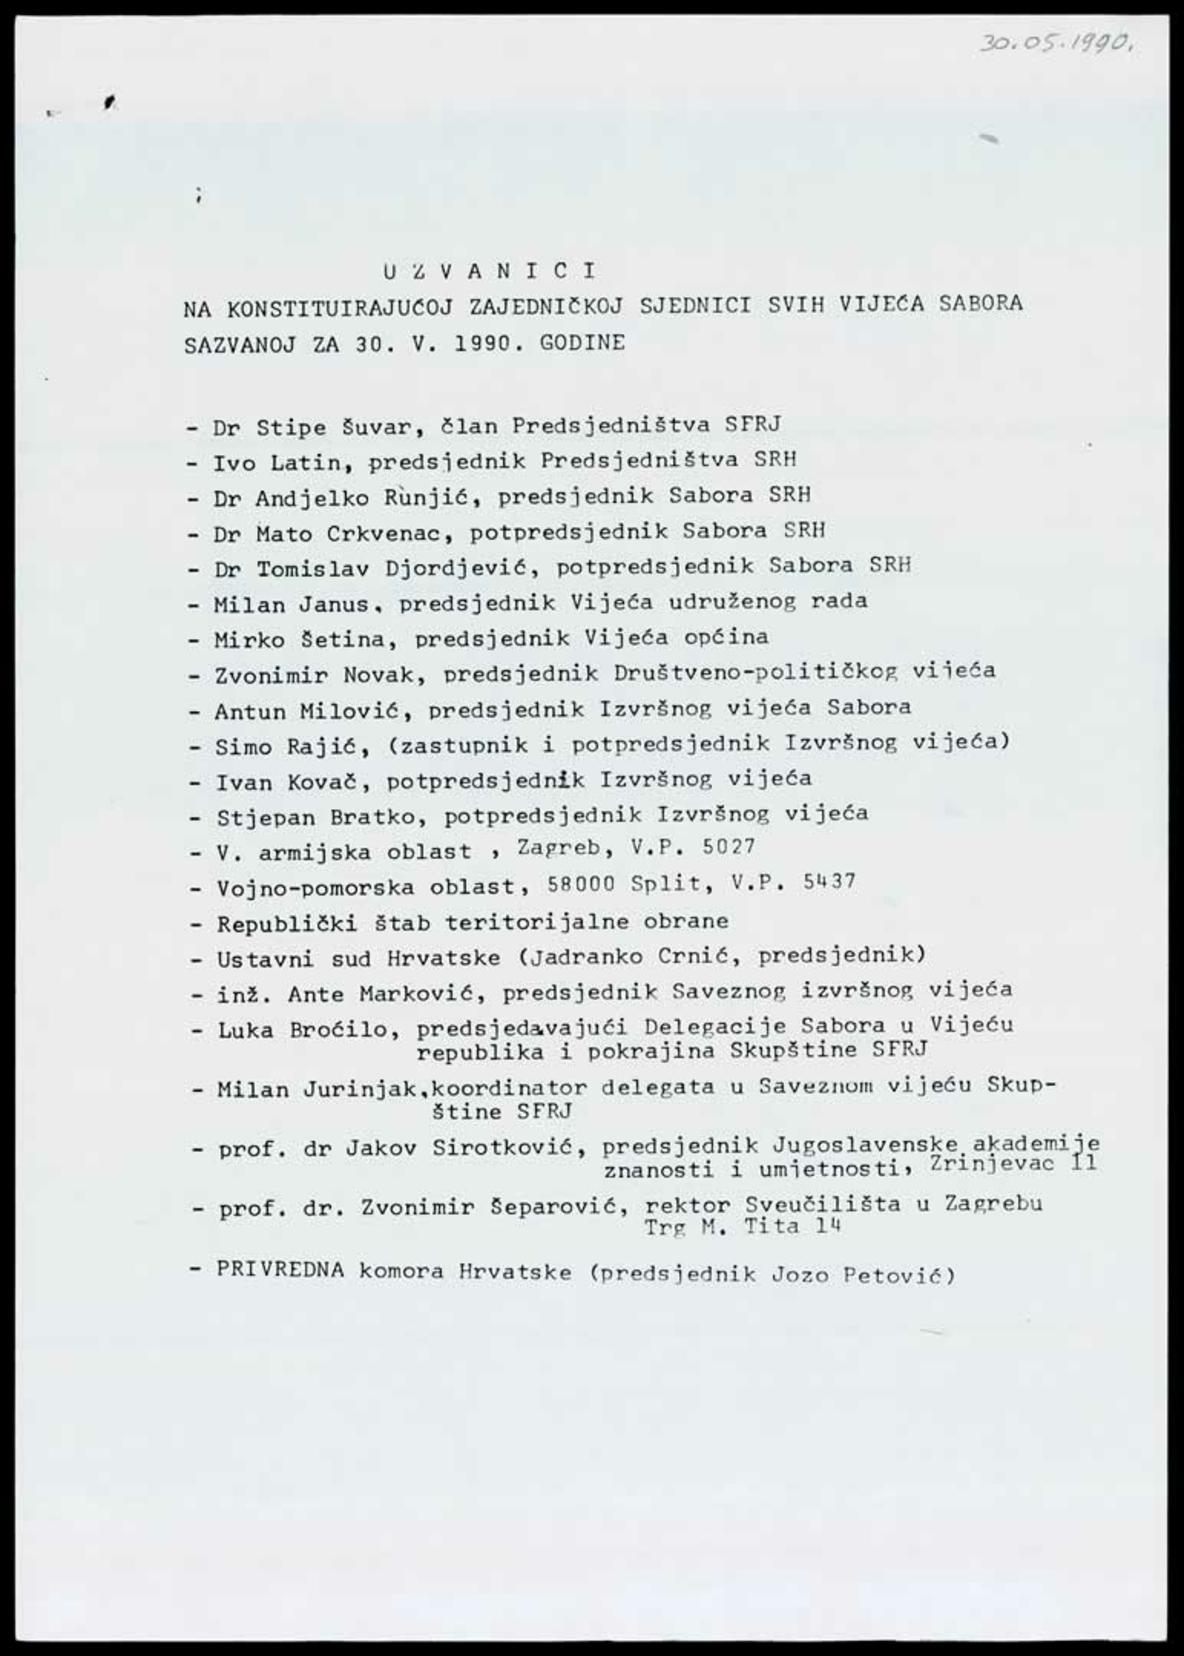 <b>Popis uzvanika na konstituirajućoj zajedničkoj sjednici svih vijeća Sabora</b>, 30. svibnja 1990.<br><br>
HR-HDA-1741. Ured predsjednika RH Franje Tuđmana. Pismohrana, fasc. 57
